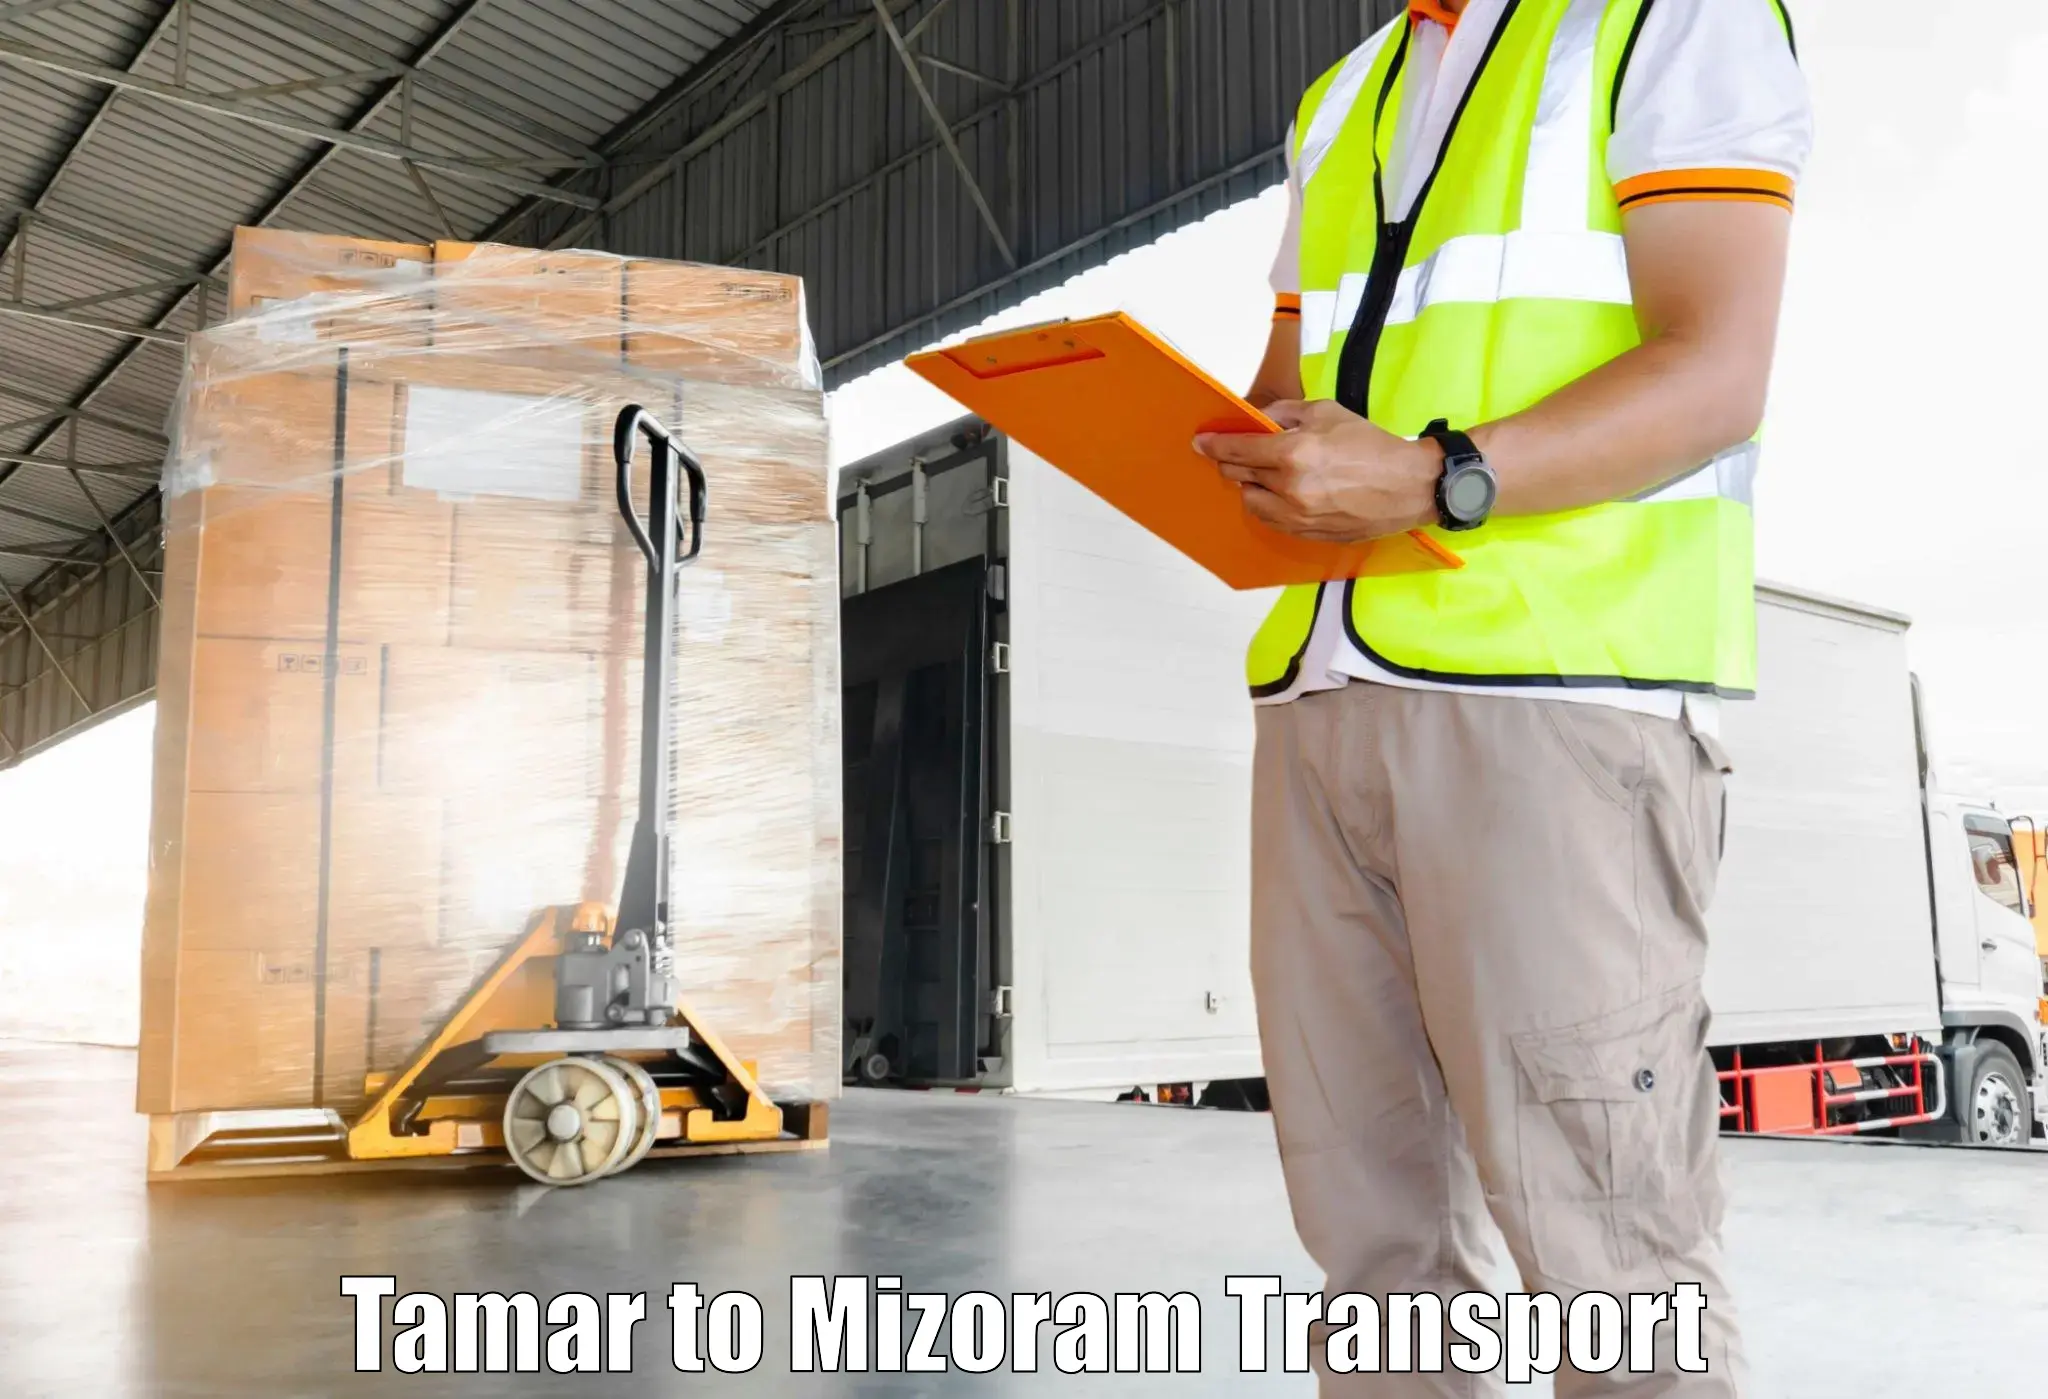 Bike transport service Tamar to Mizoram